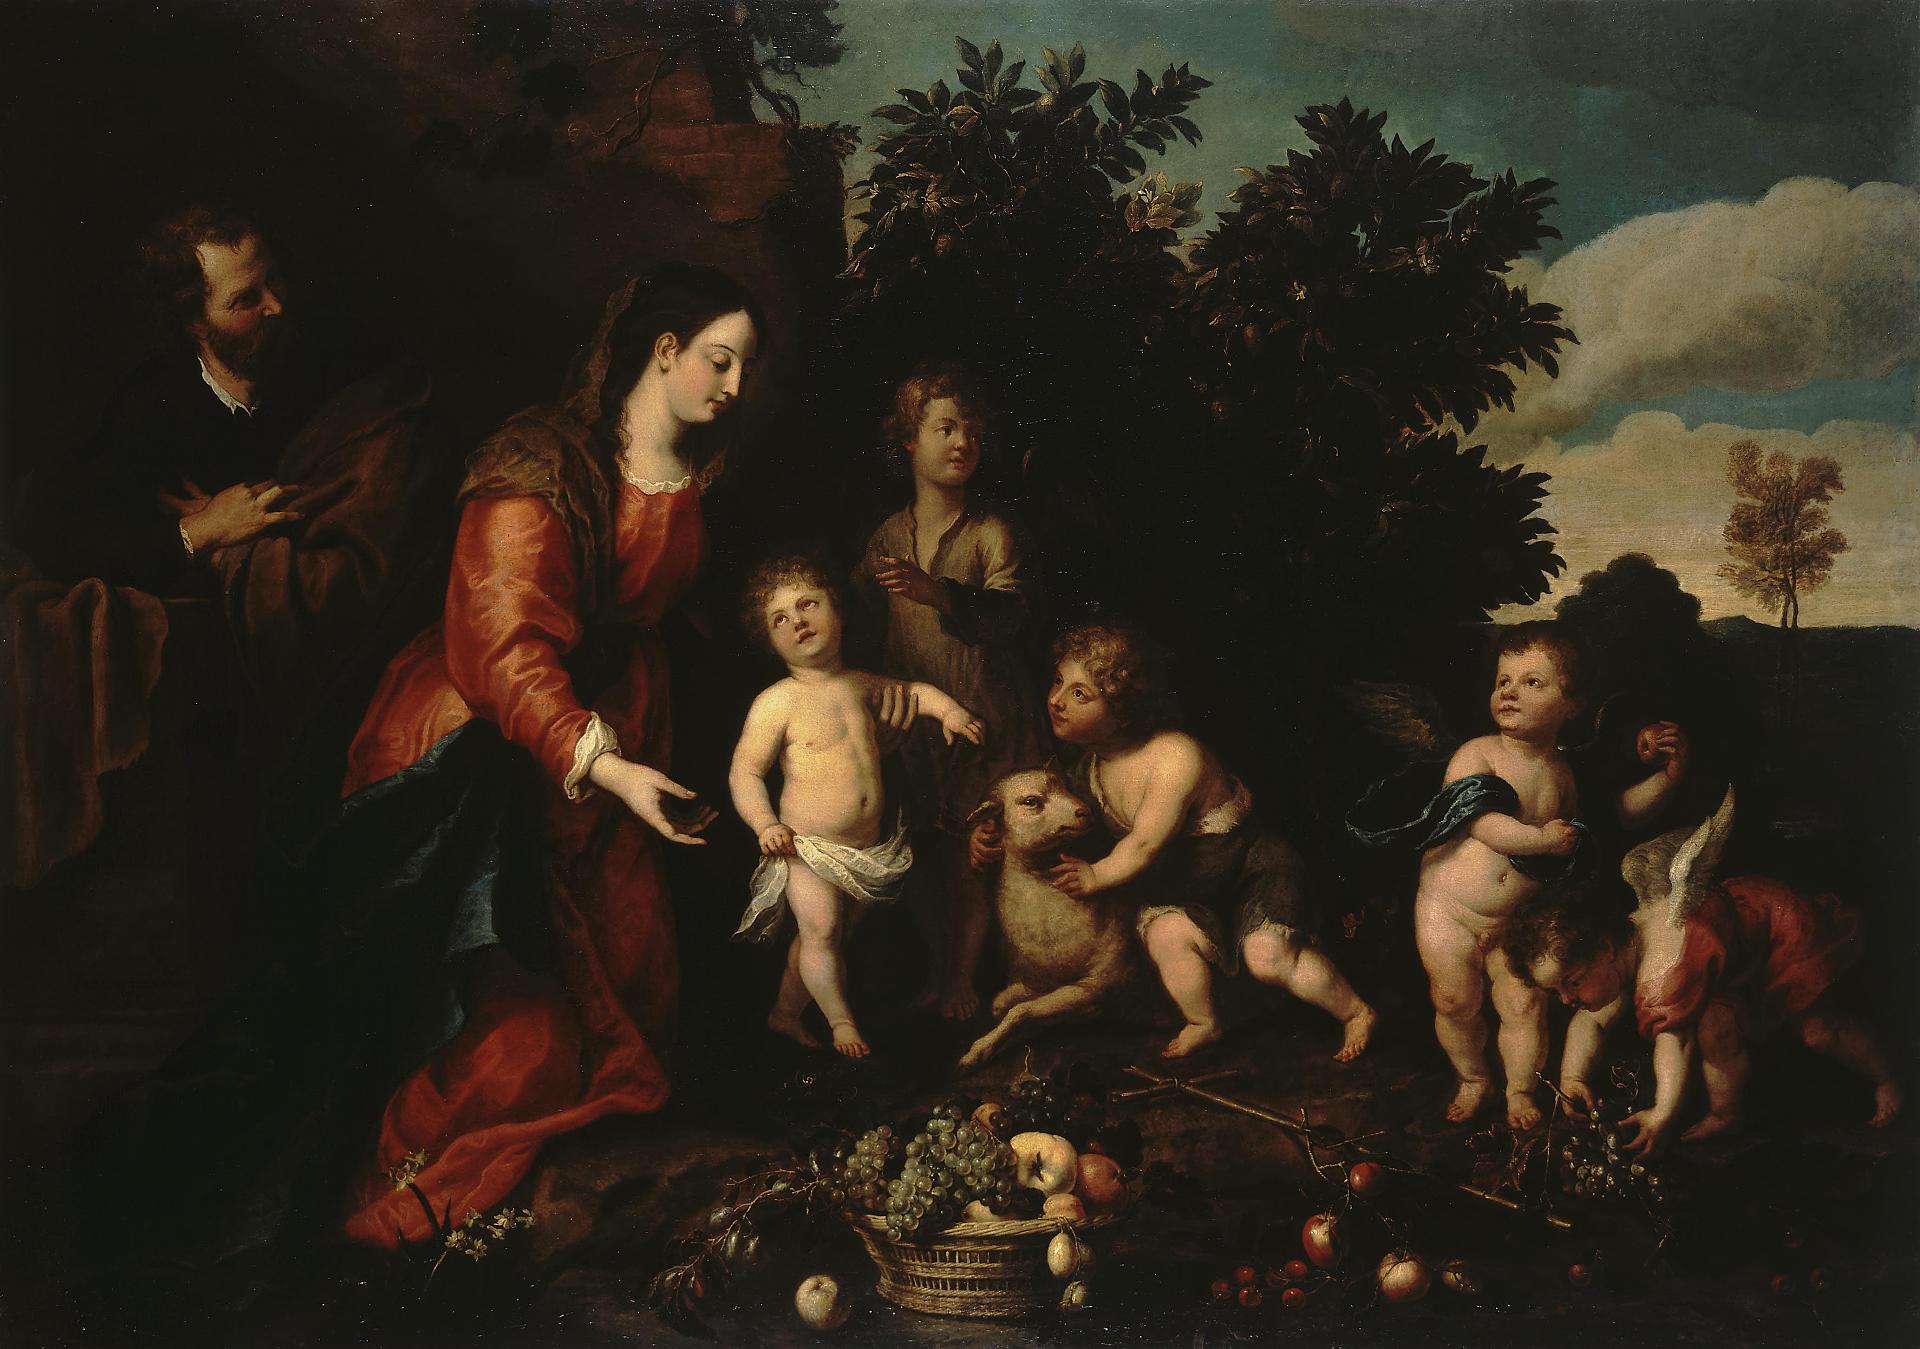 Абрахам ван Дипенбек, Адриан ван Утрехт. "Святое семейство с Младенцем, Иоанном и ангелами". 1640-е. Эрмитаж, Санкт-Петербург.